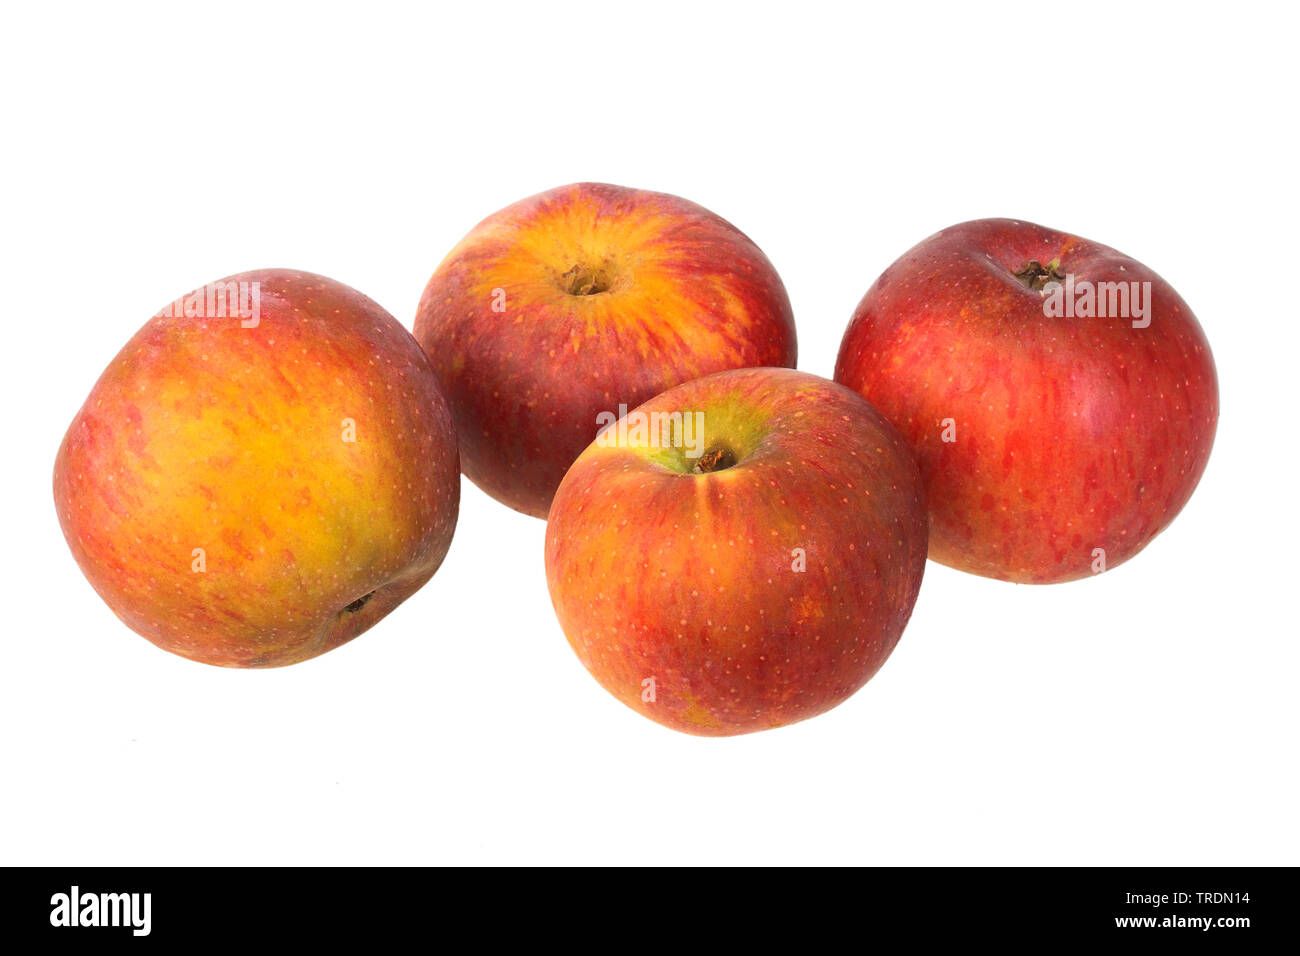 apple (Malus domestica 'Brauner Matapfel', Malus domestica Neuer Brauner Matapfel), apples of the cultivar Brauner Matapfel Stock Photo